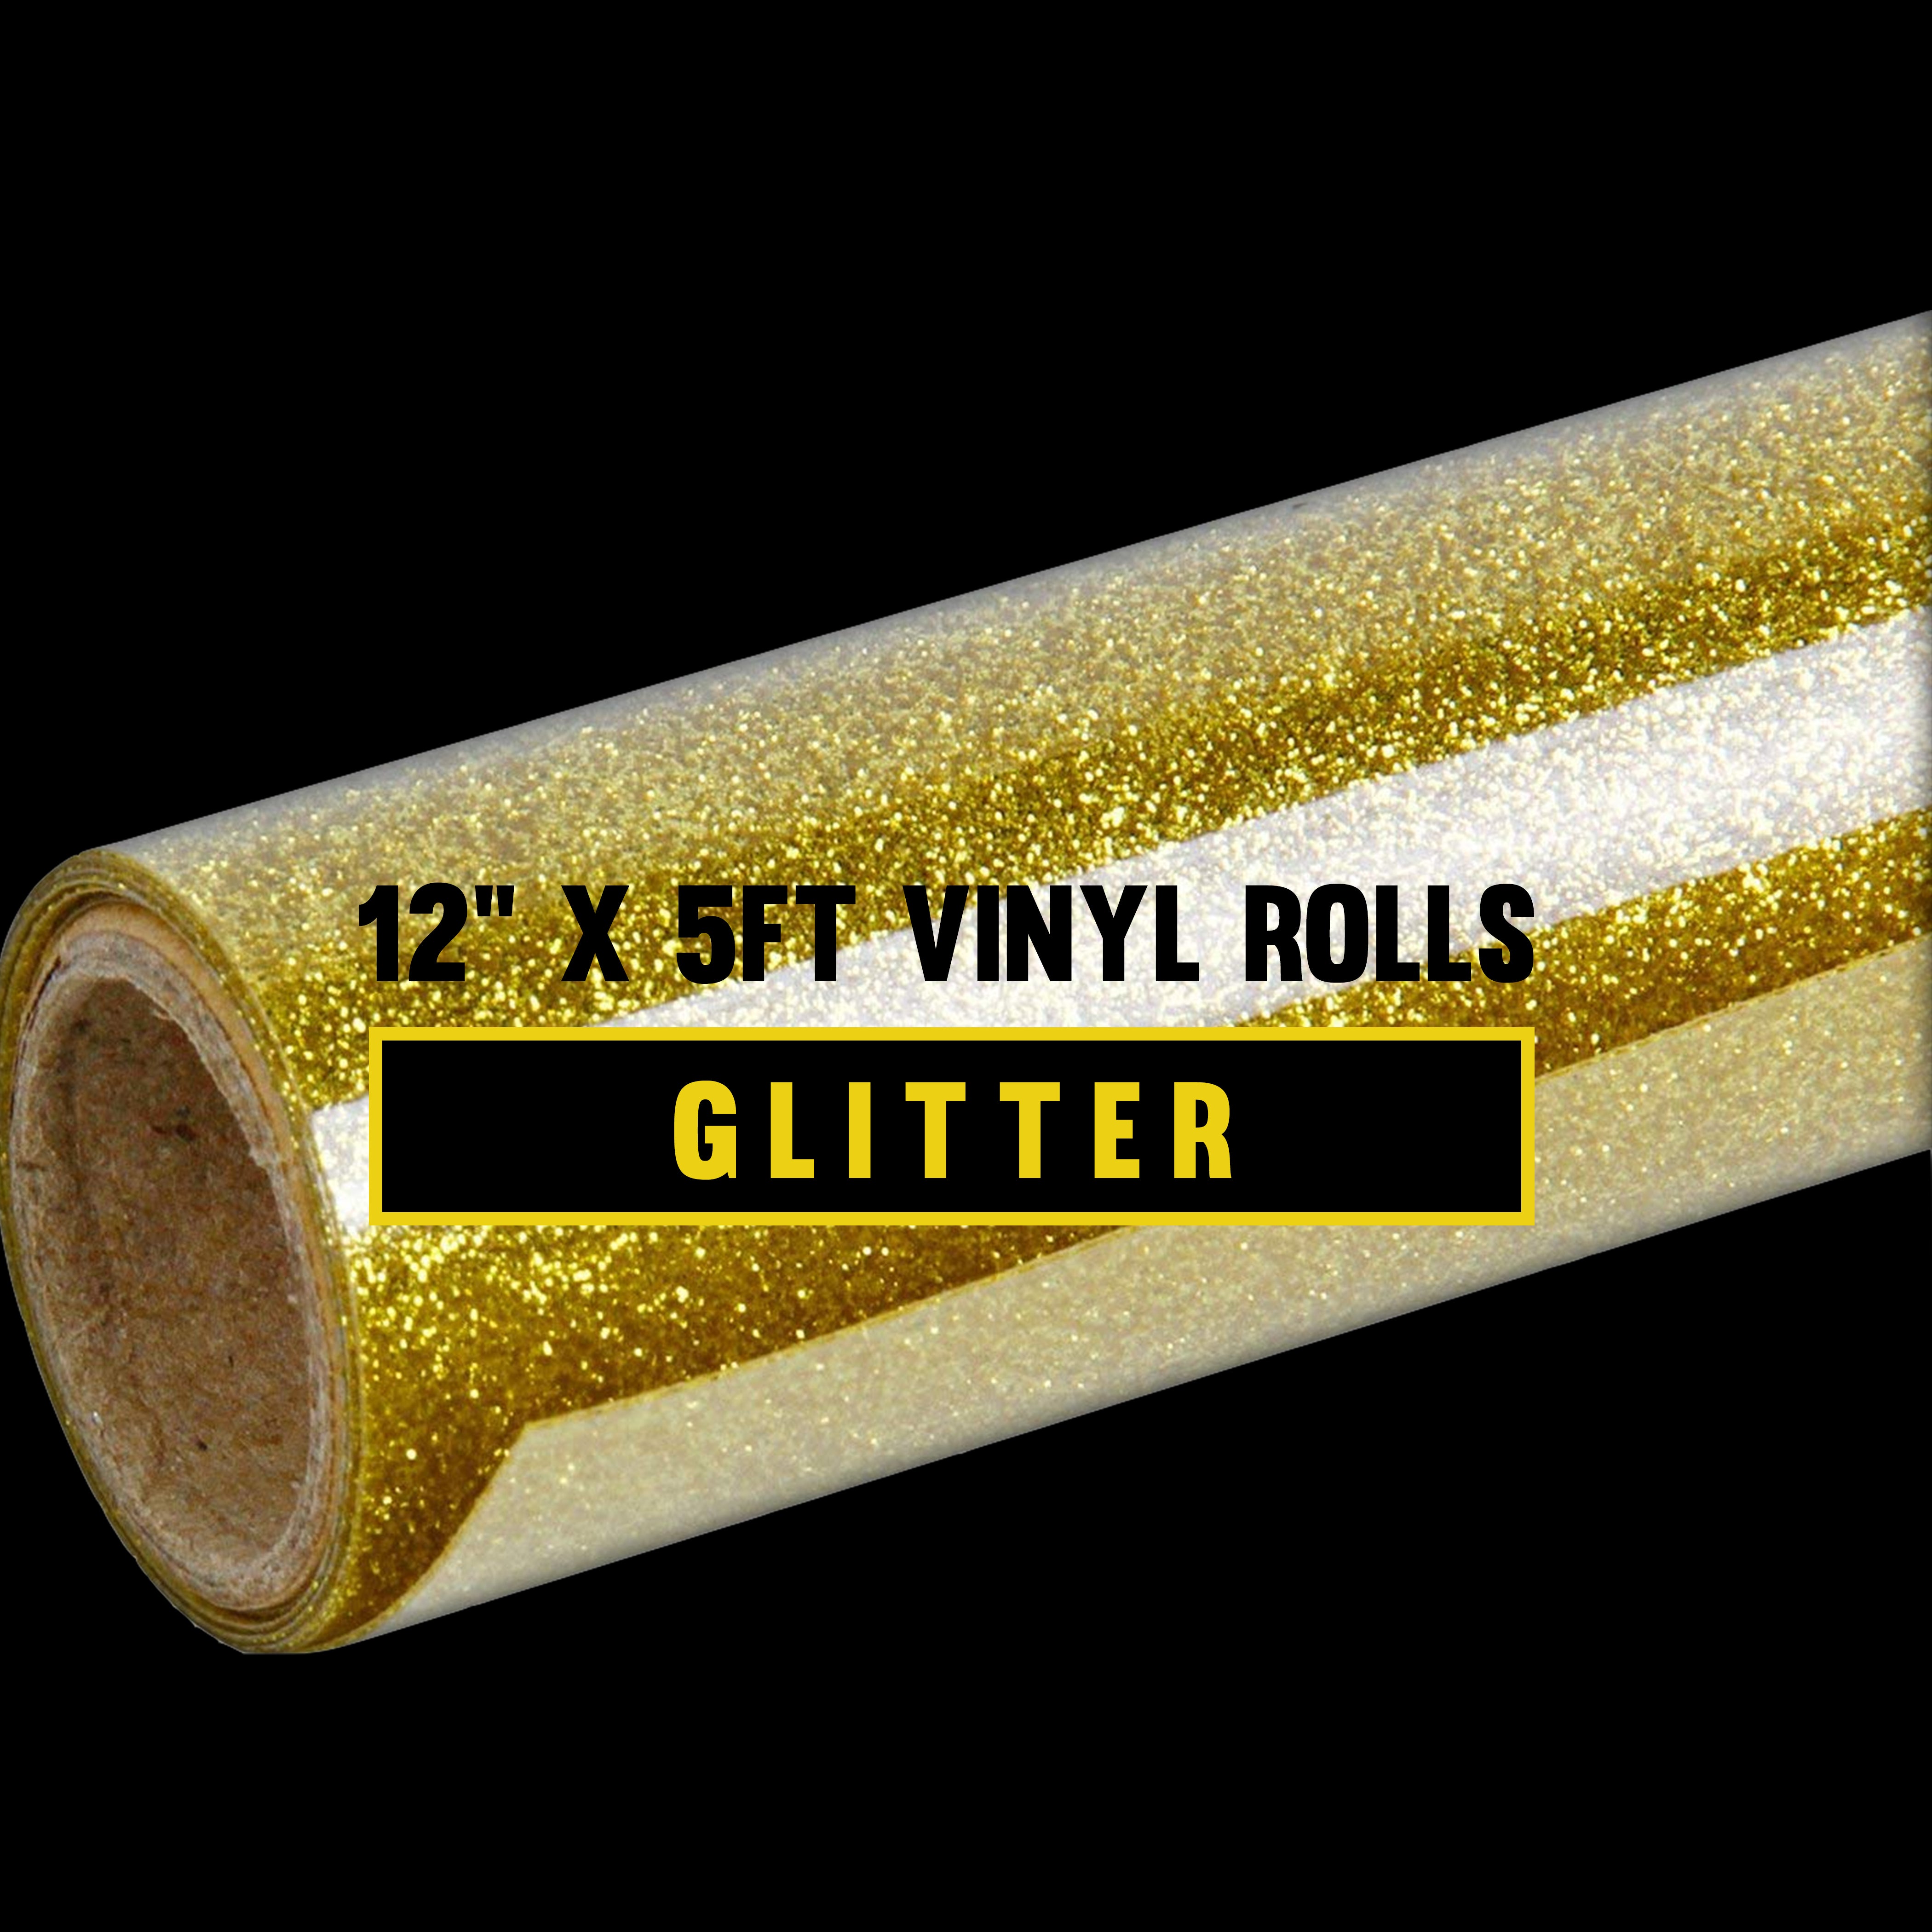 HTV World - Sister Glitter Heat Transfer Vinyl 12in x 5ft Rolls